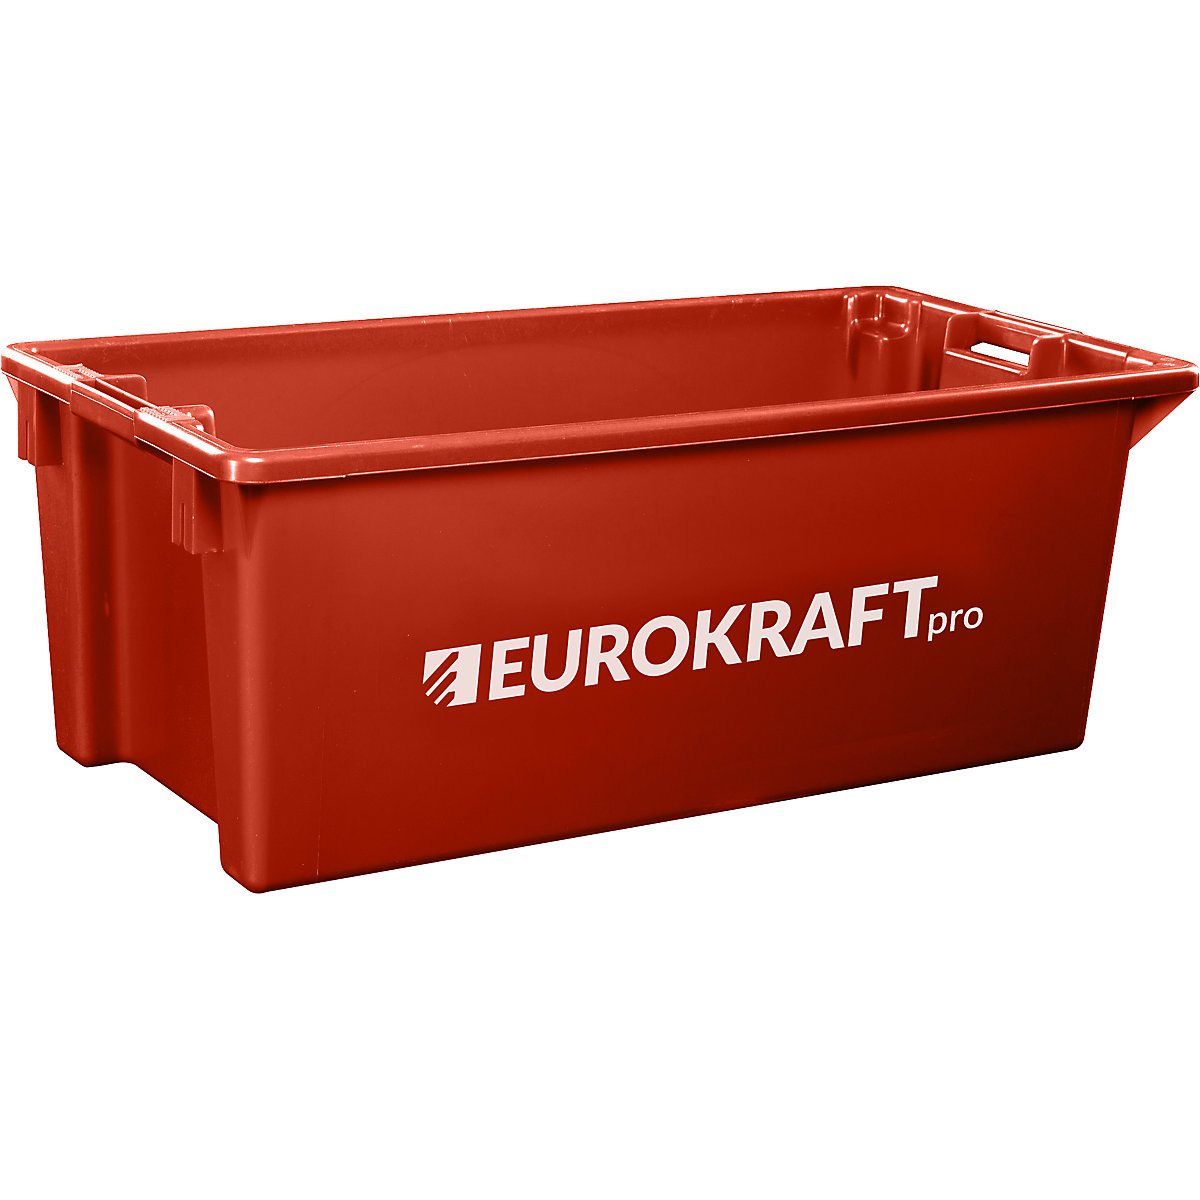 EUROKRAFTpro – Otočná stohovací nádoba z polypropylenu vhodného pro potraviny, obsah 13 litrů, bal.j. 4 ks, stěny a dno plné, červená